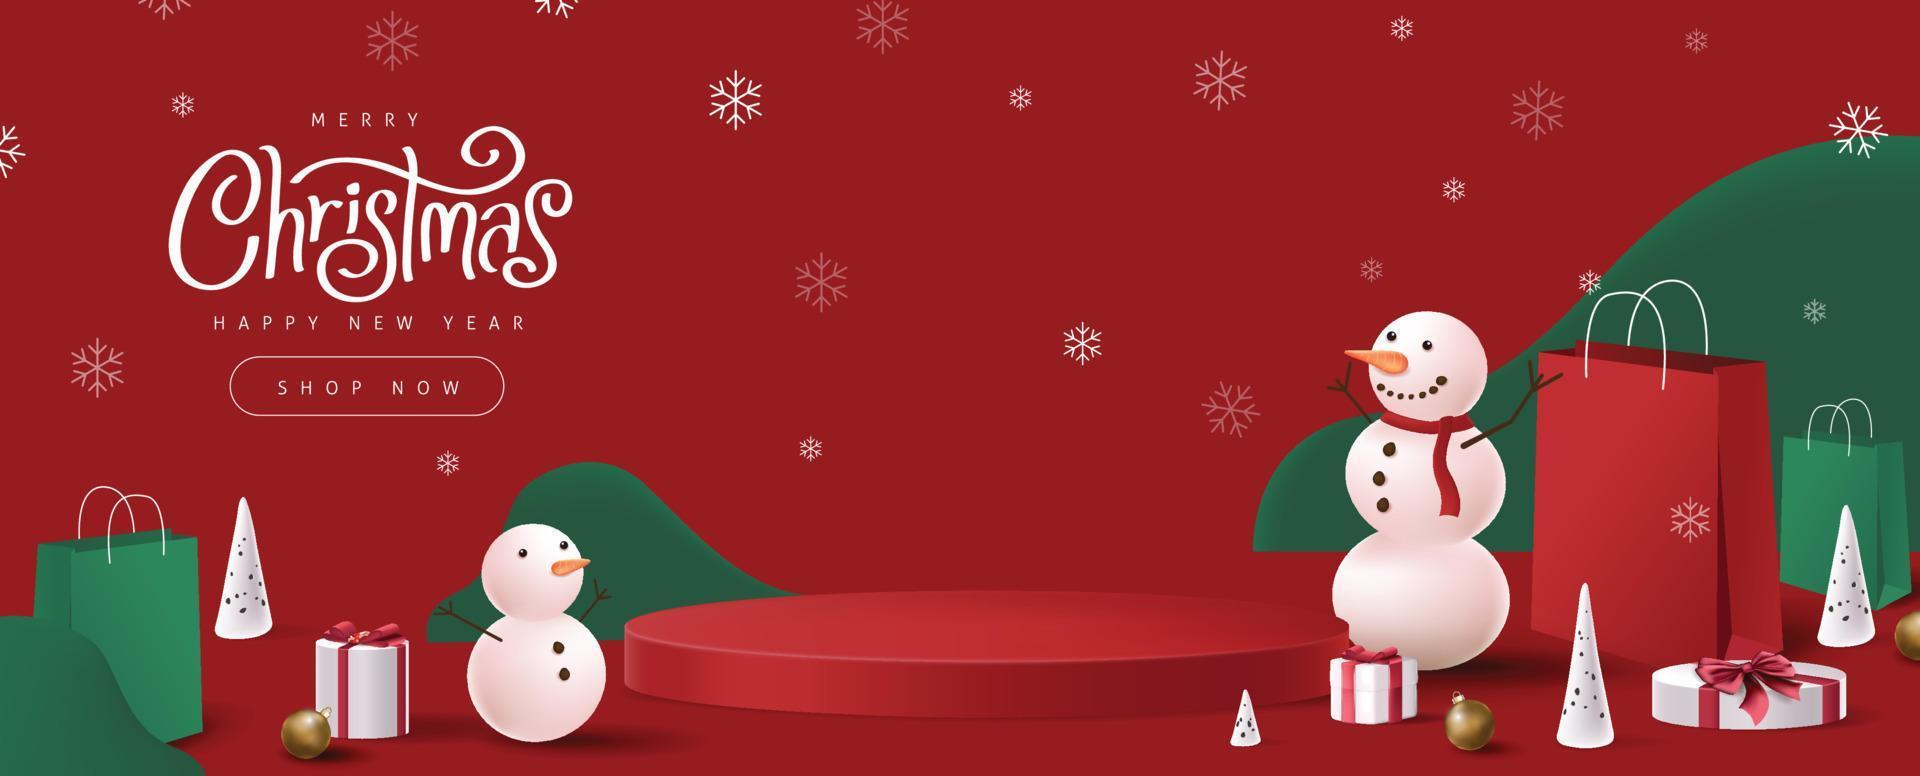 banner de feliz natal com forma cilíndrica de exibição de produto e composição de férias de inverno vetor